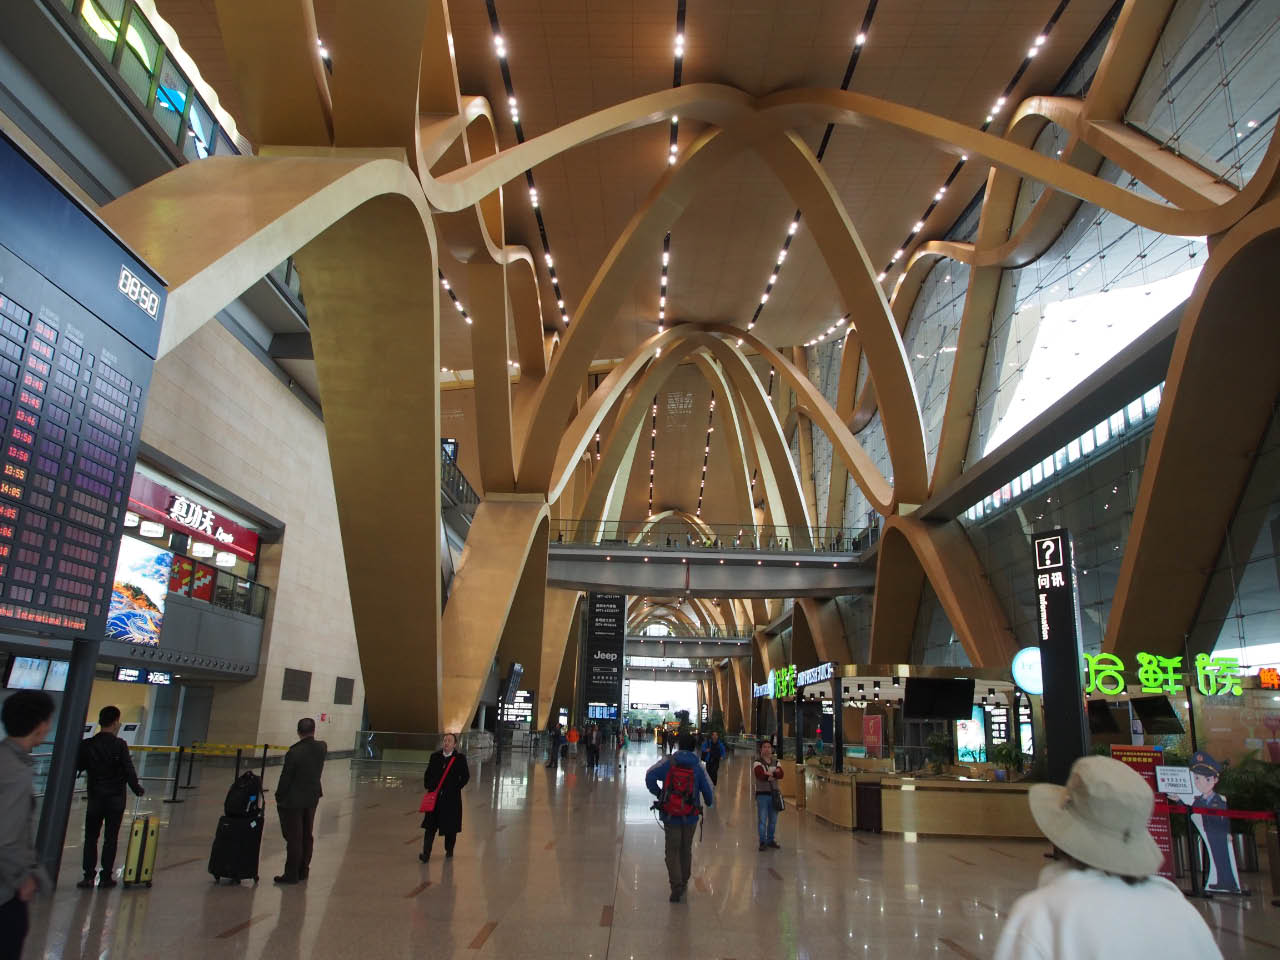 03 Kunming airport 1